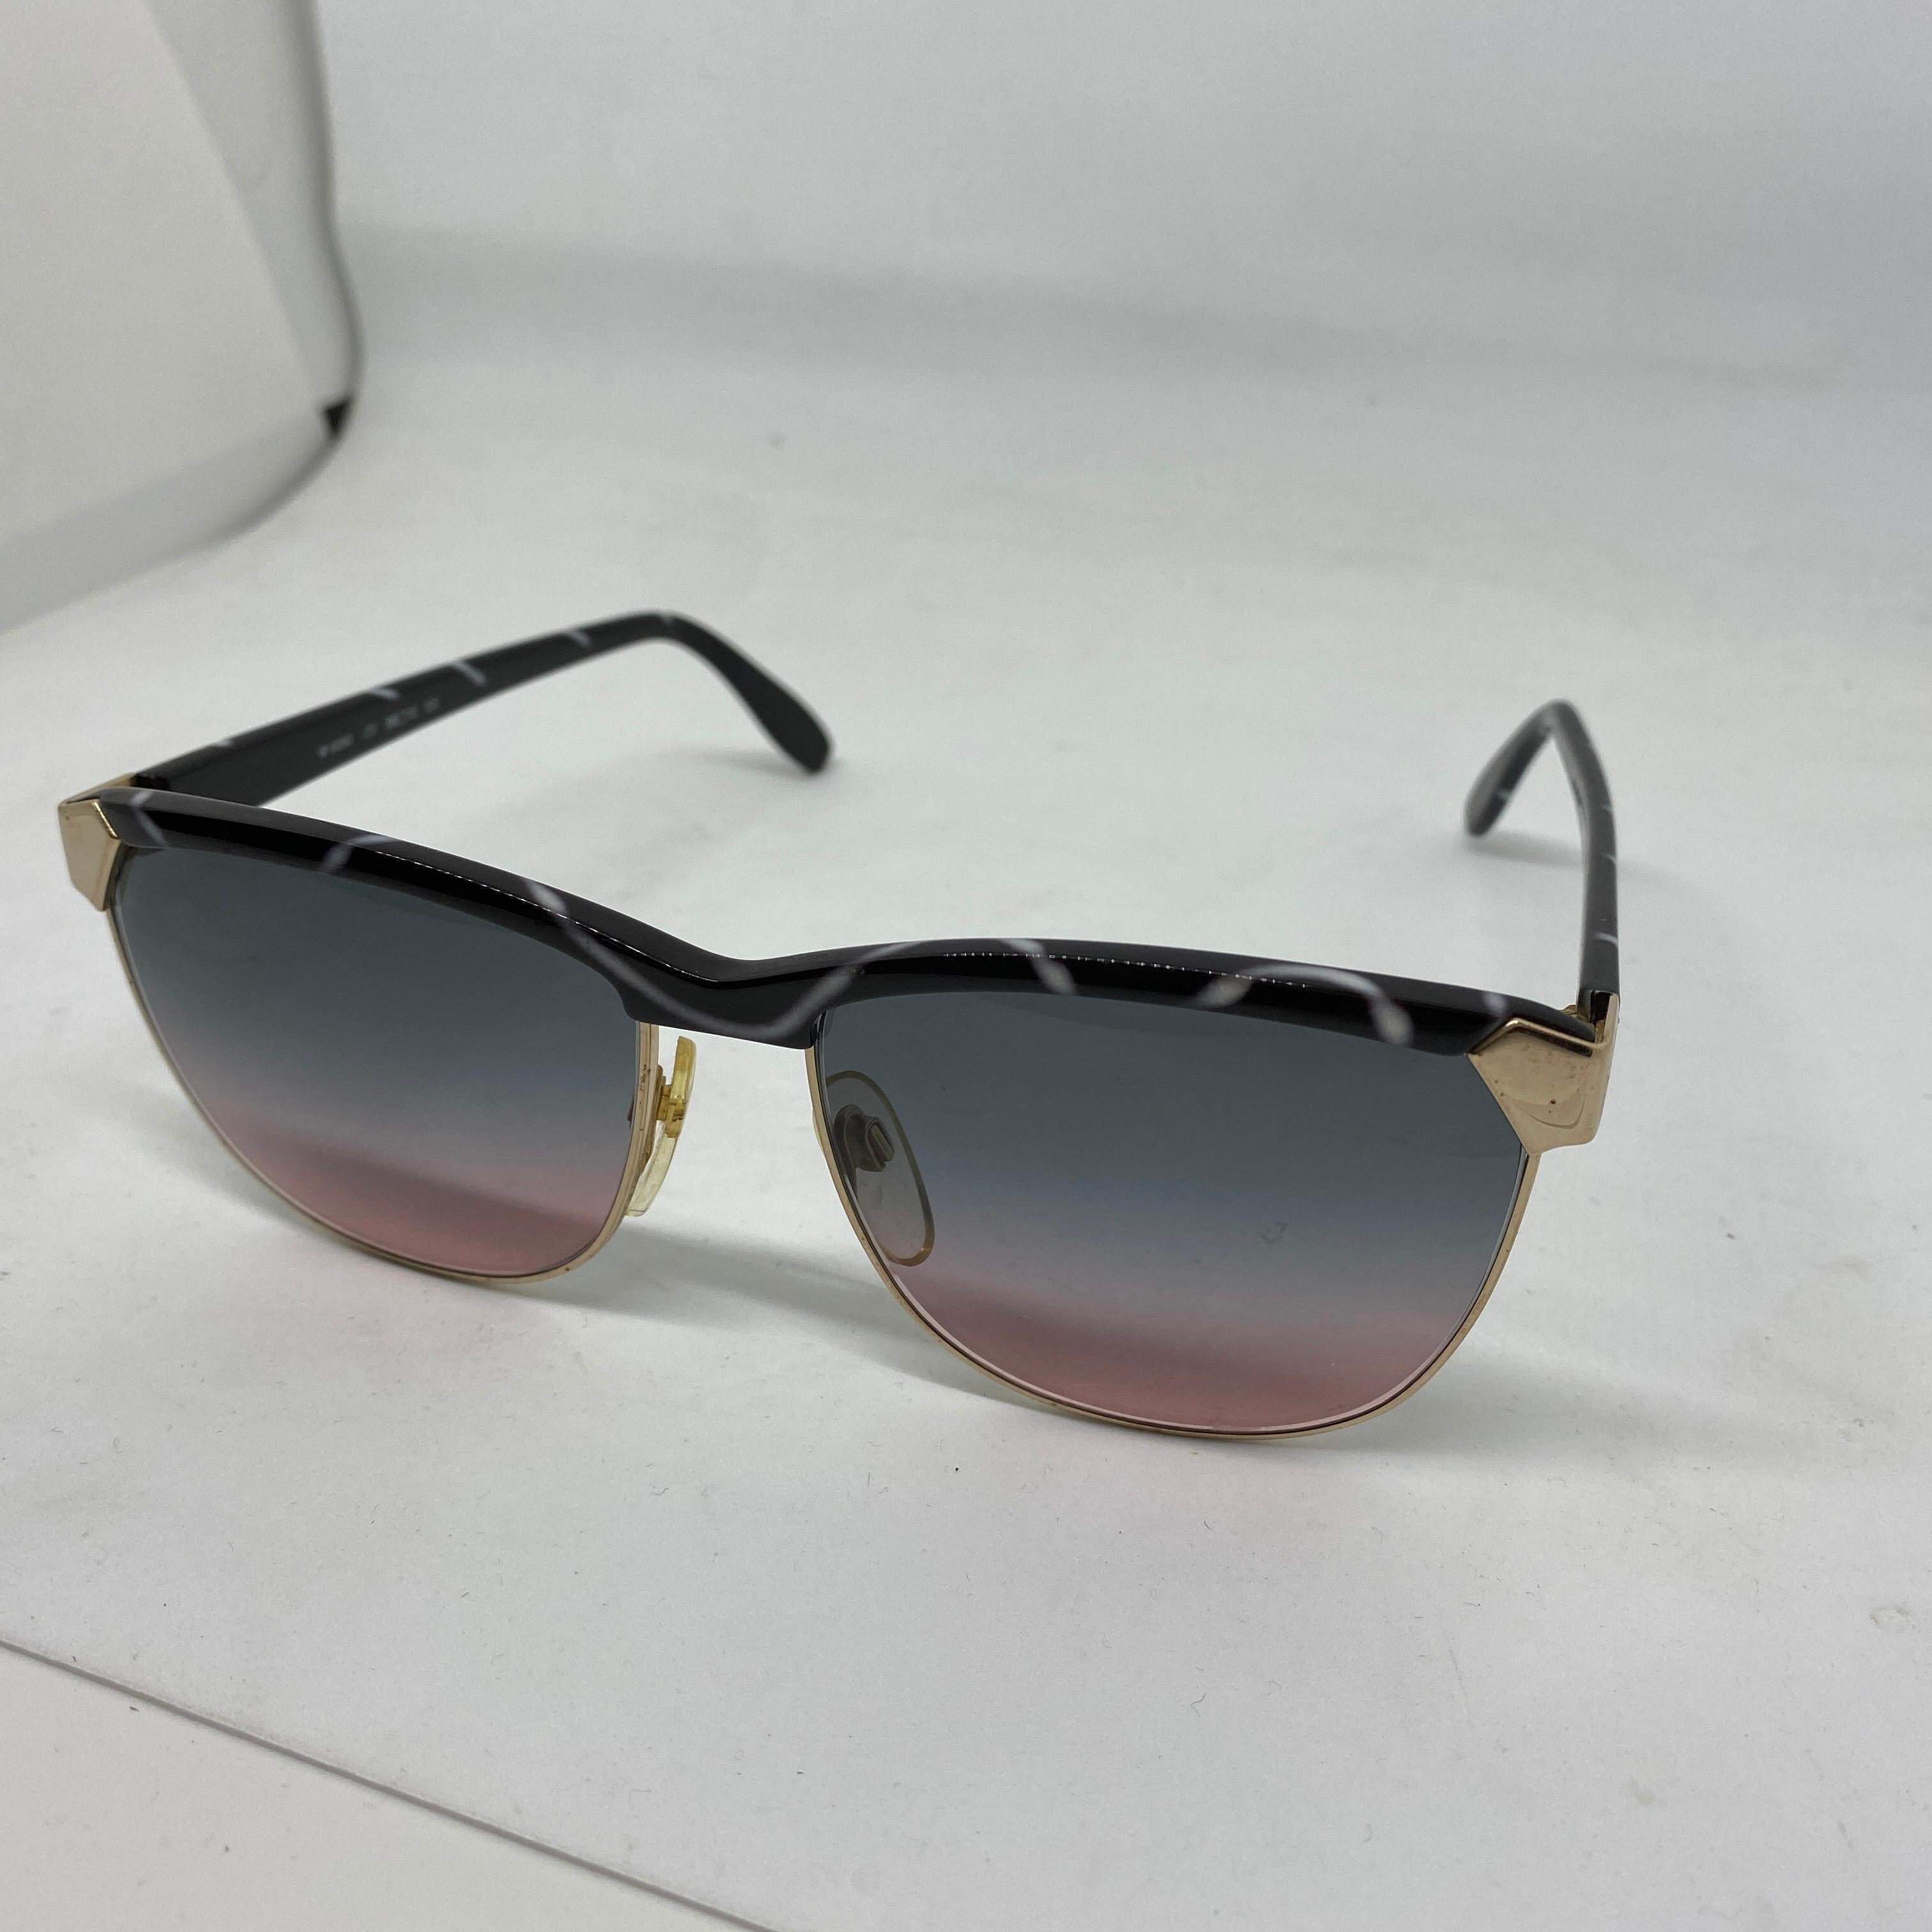 Schwarze und weiße italienische Sonnenbrille in sehr gutem Zustand